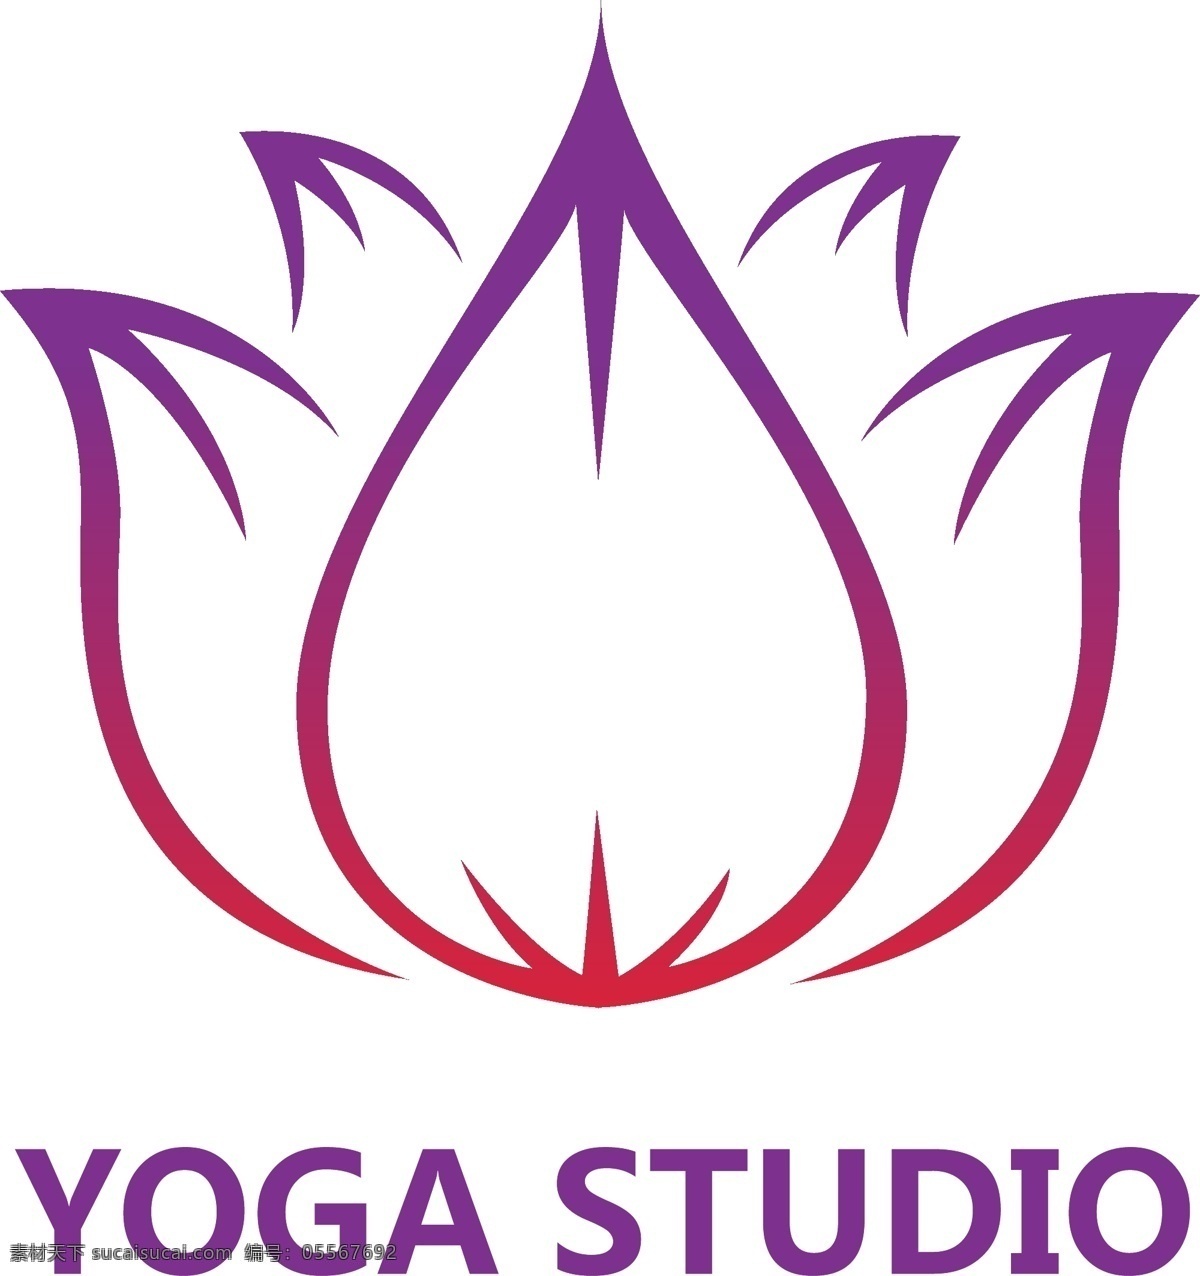 瑜伽 工作室 logo 美容logo 瑜伽logo 医疗logo 整形logo 大气logo 简洁logo 时尚logo 企业logo 公司logo